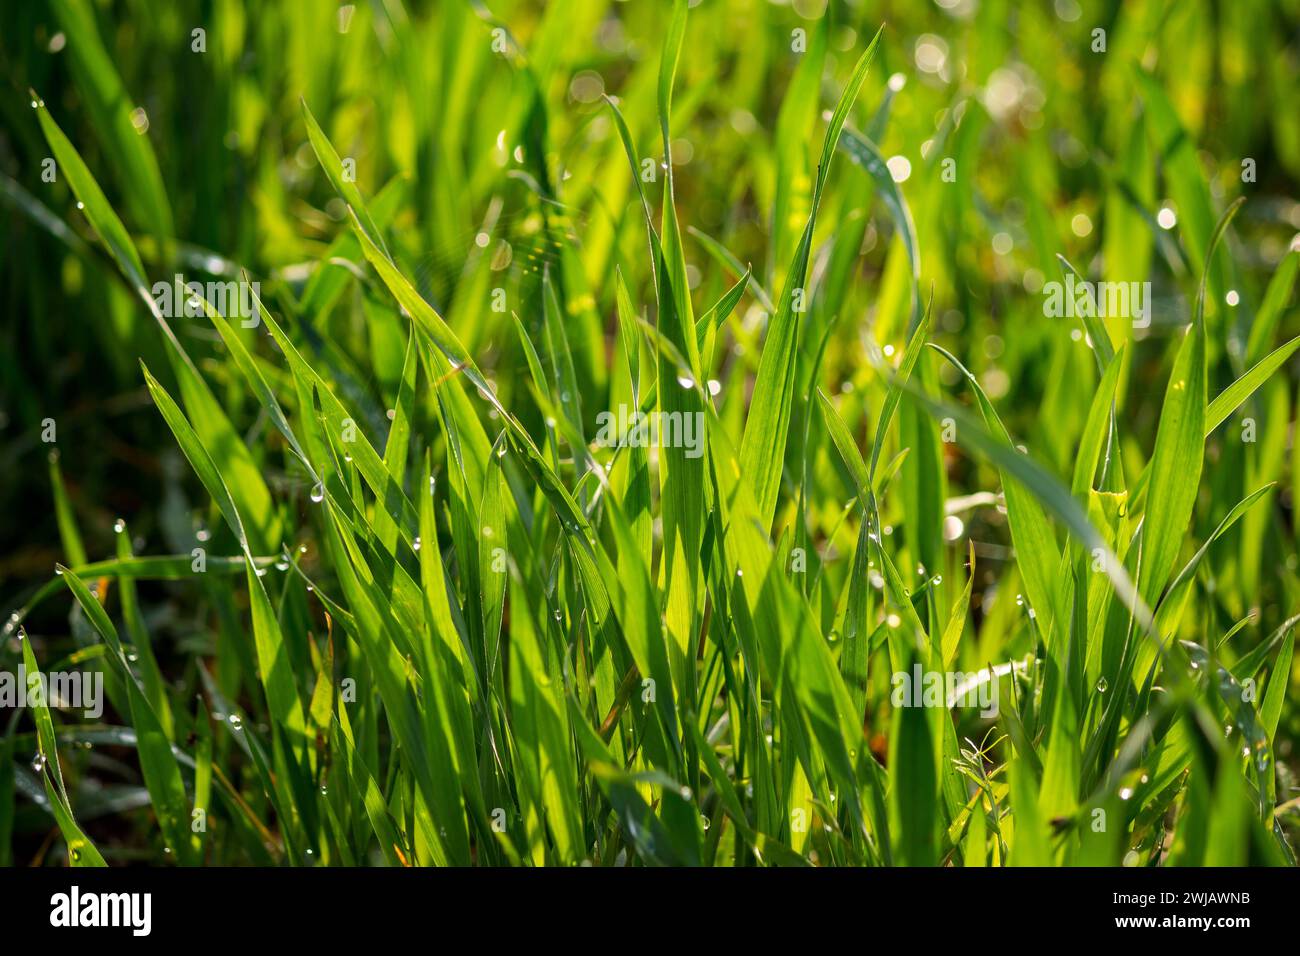 Jungweizenstämme im Morgentau. Saftiger natürlicher Hintergrund aus grünem Gras. Winterkulturen auf einem landwirtschaftlichen Feld Stockfoto